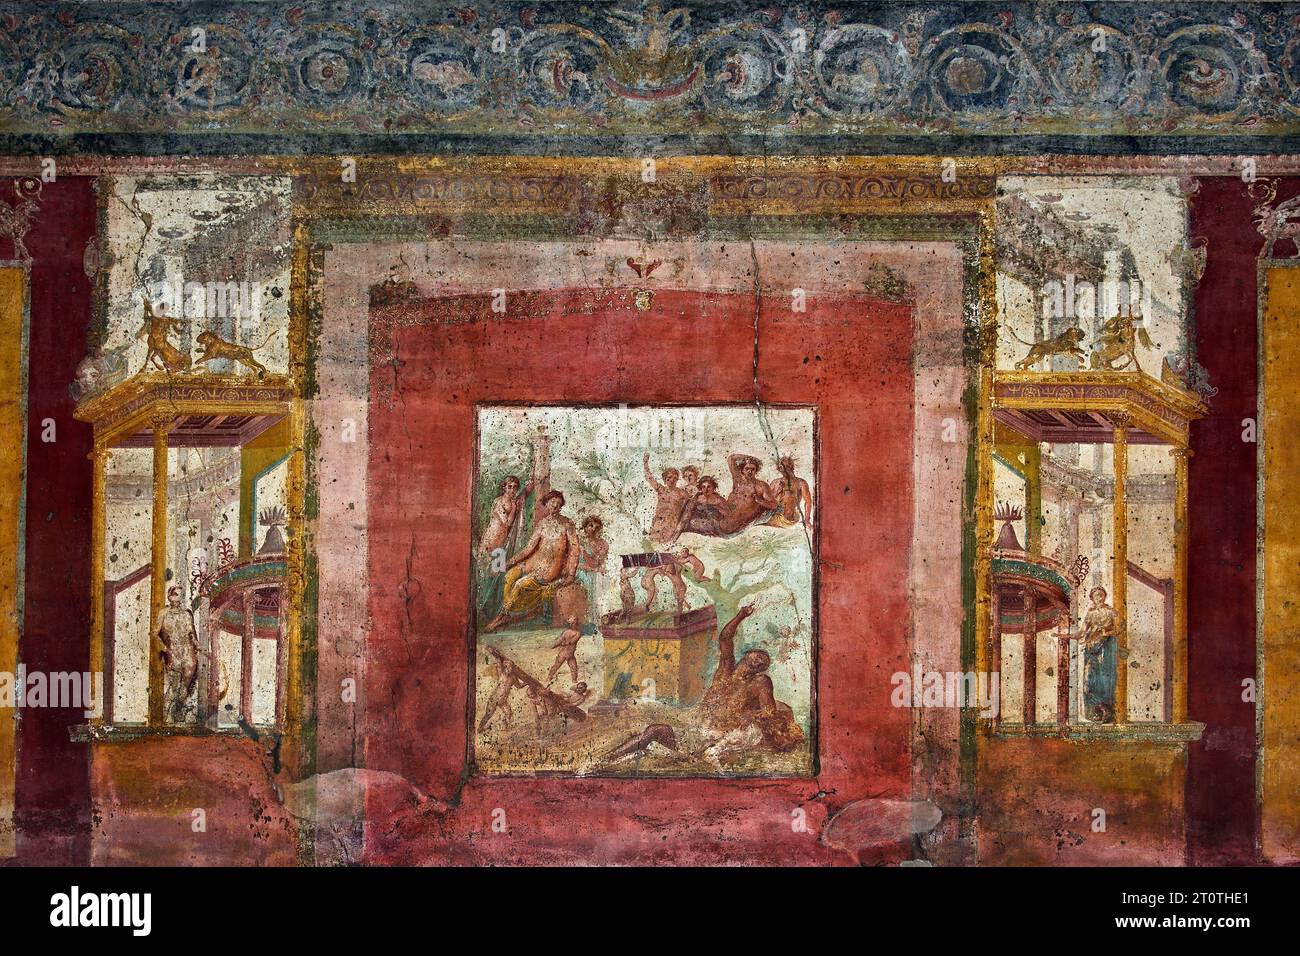 La città romana di fresco Pompei si trova vicino a Napoli, nella regione Campania. Pompei fu sepolta sotto 4-6 m di cenere vulcanica e pomice nell'eruzione del Vesuvio nel 79 d.C. Italia Foto Stock